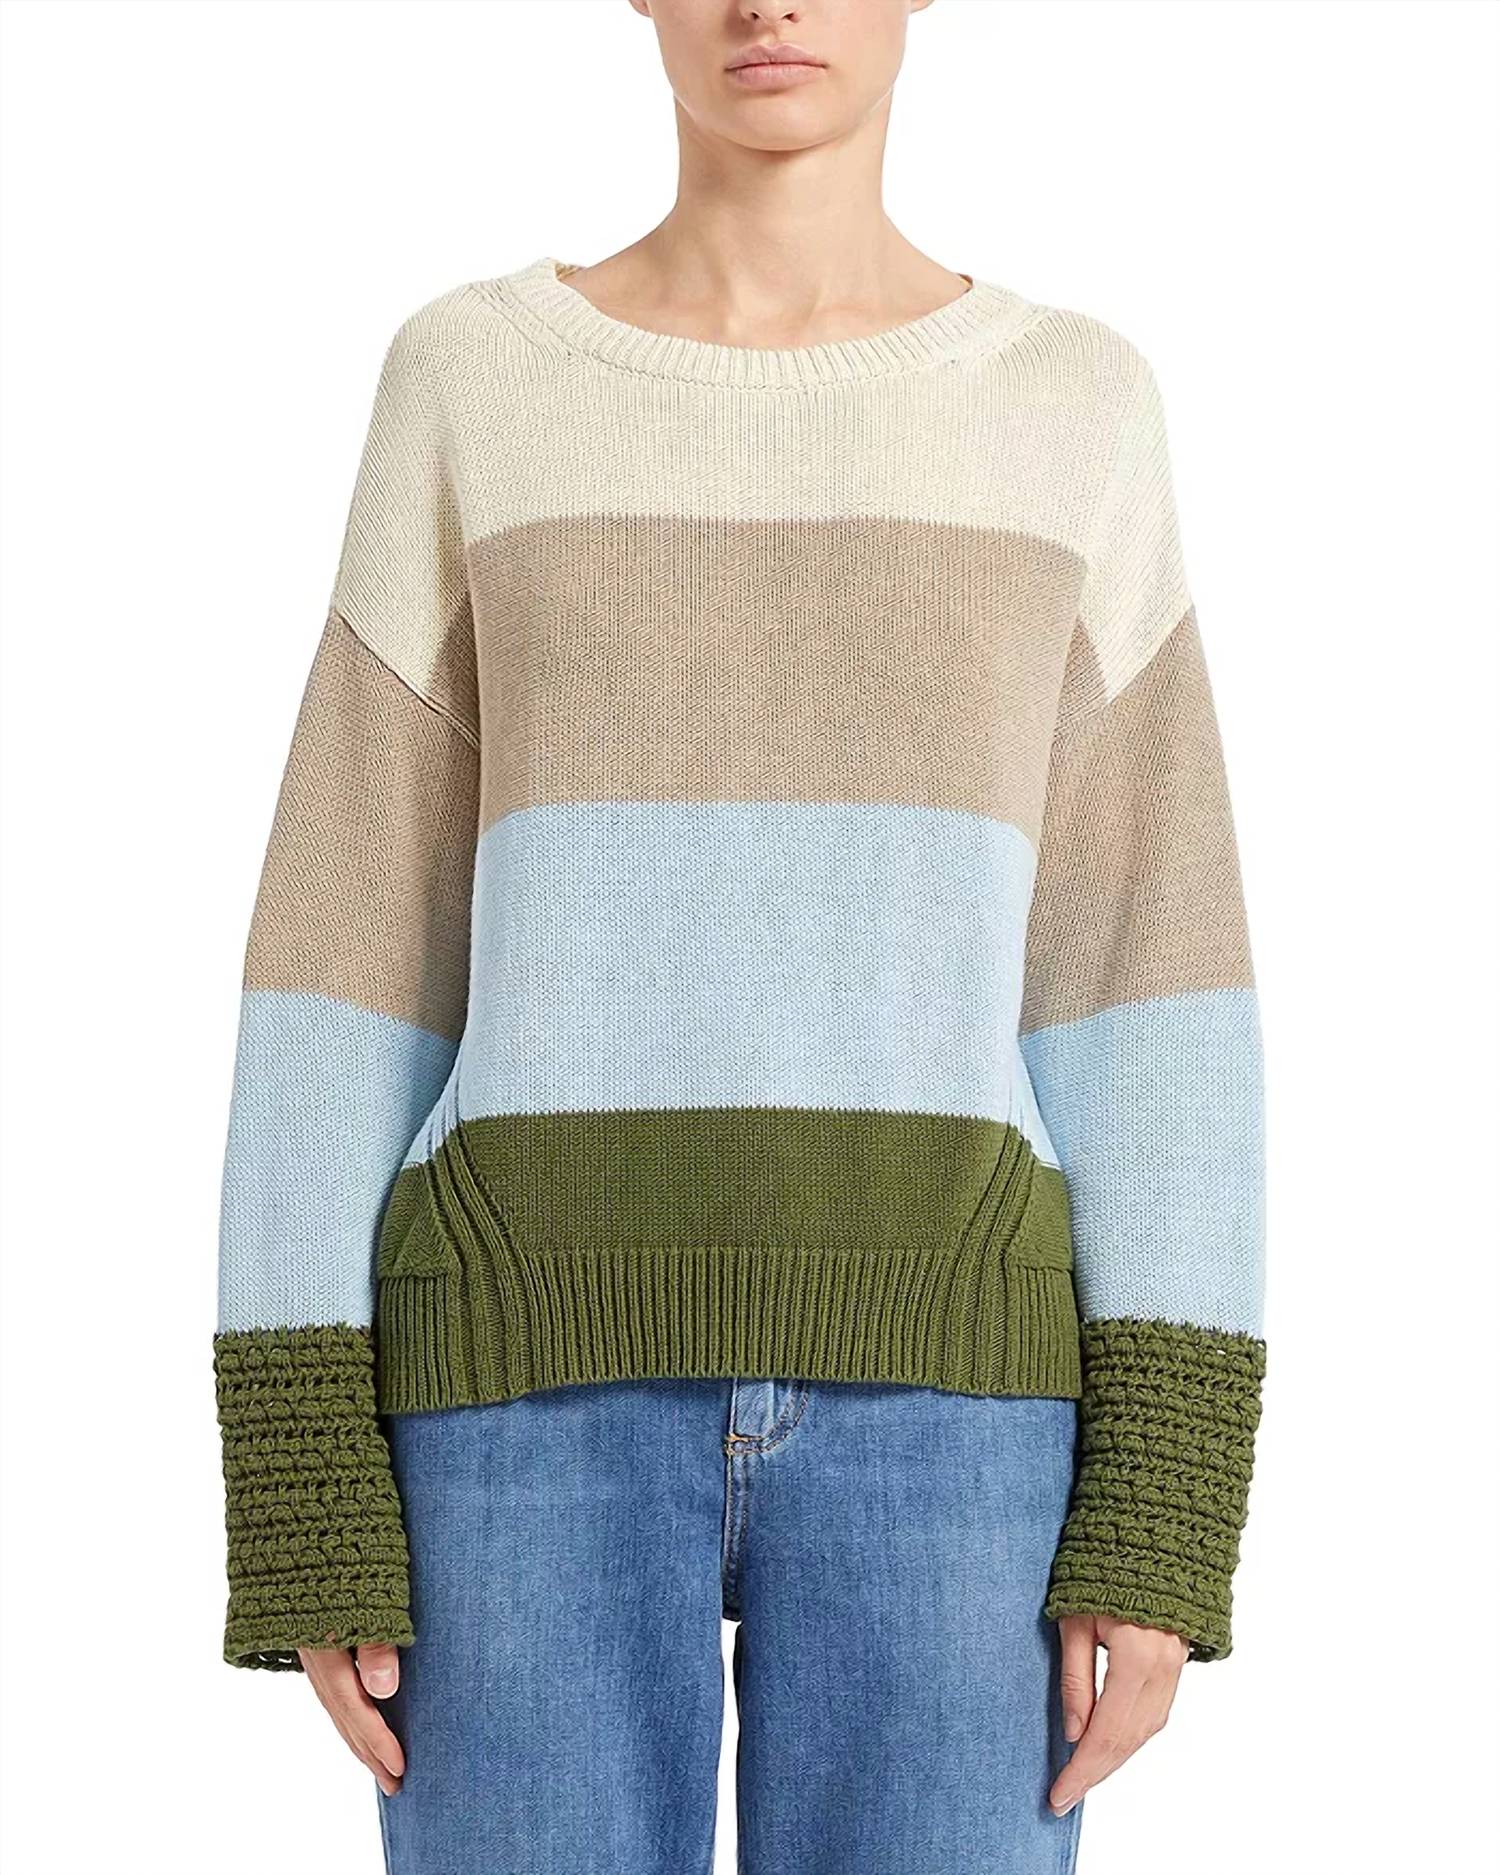 Marella Silvana Sweater In Cream/beige/blue/green In Multi